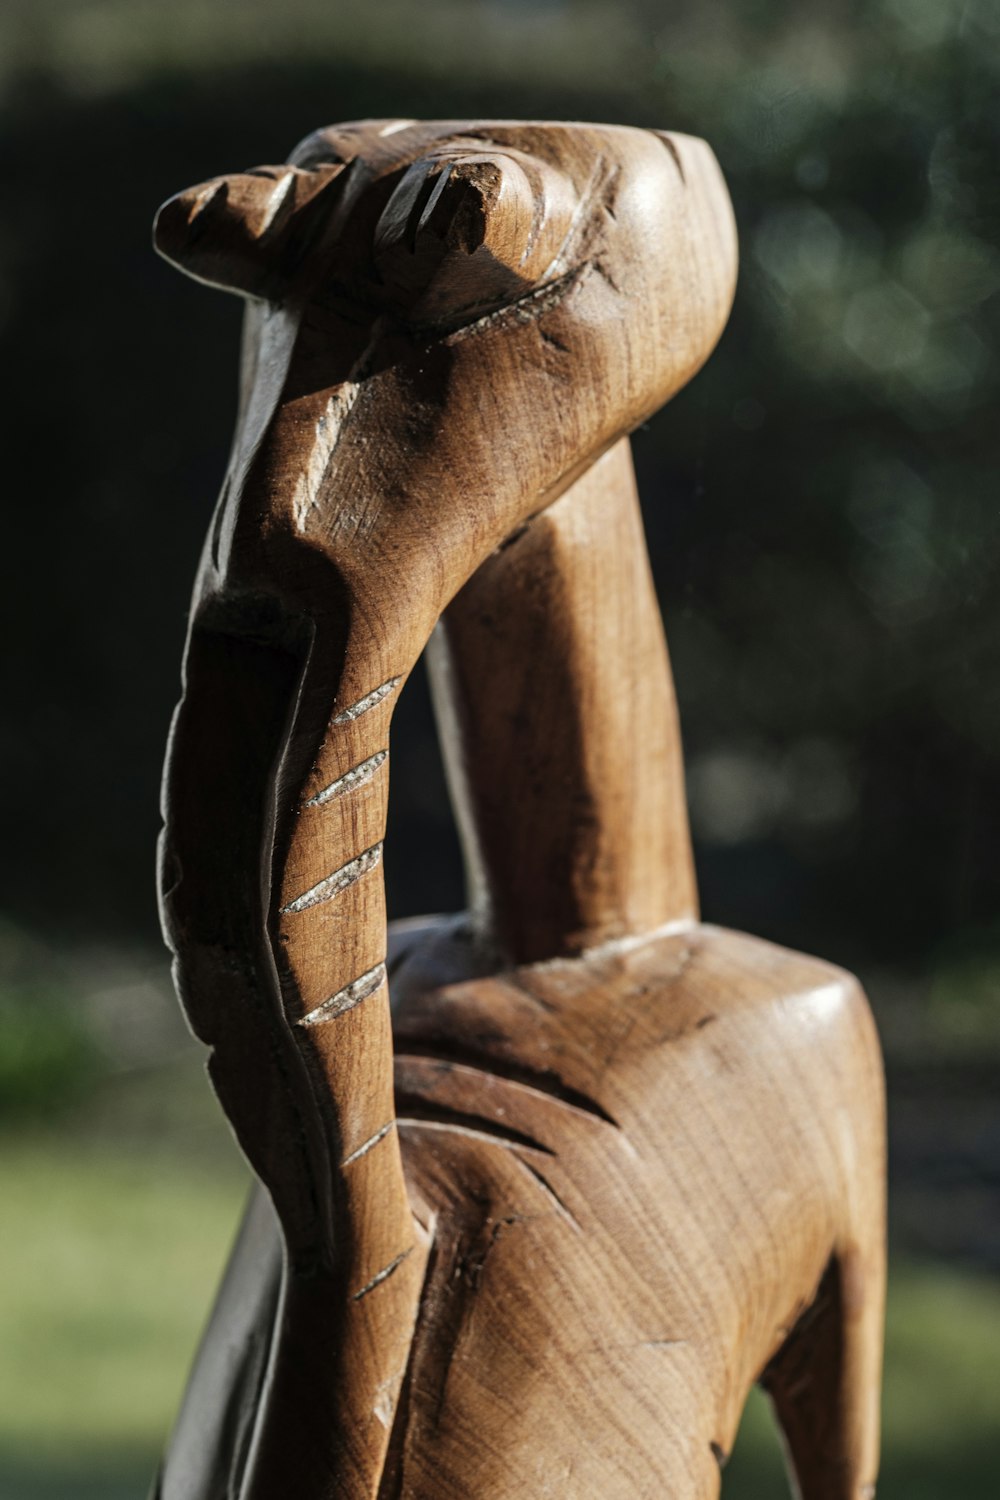 una statua in legno di una persona con una mano sulla testa